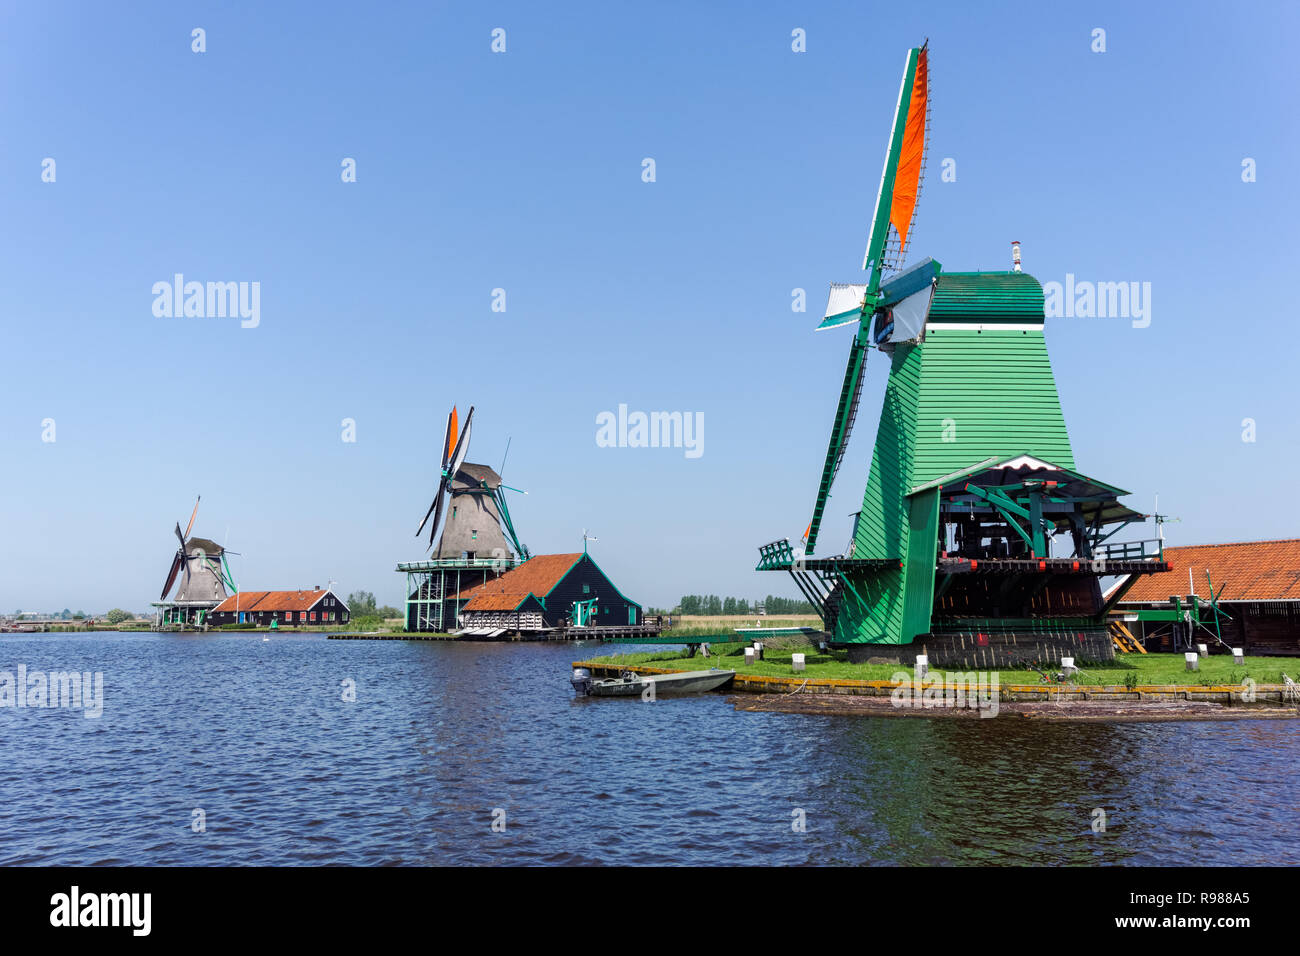 Dutch windmills at Zaanse Schans in Netherlands Stock Photo